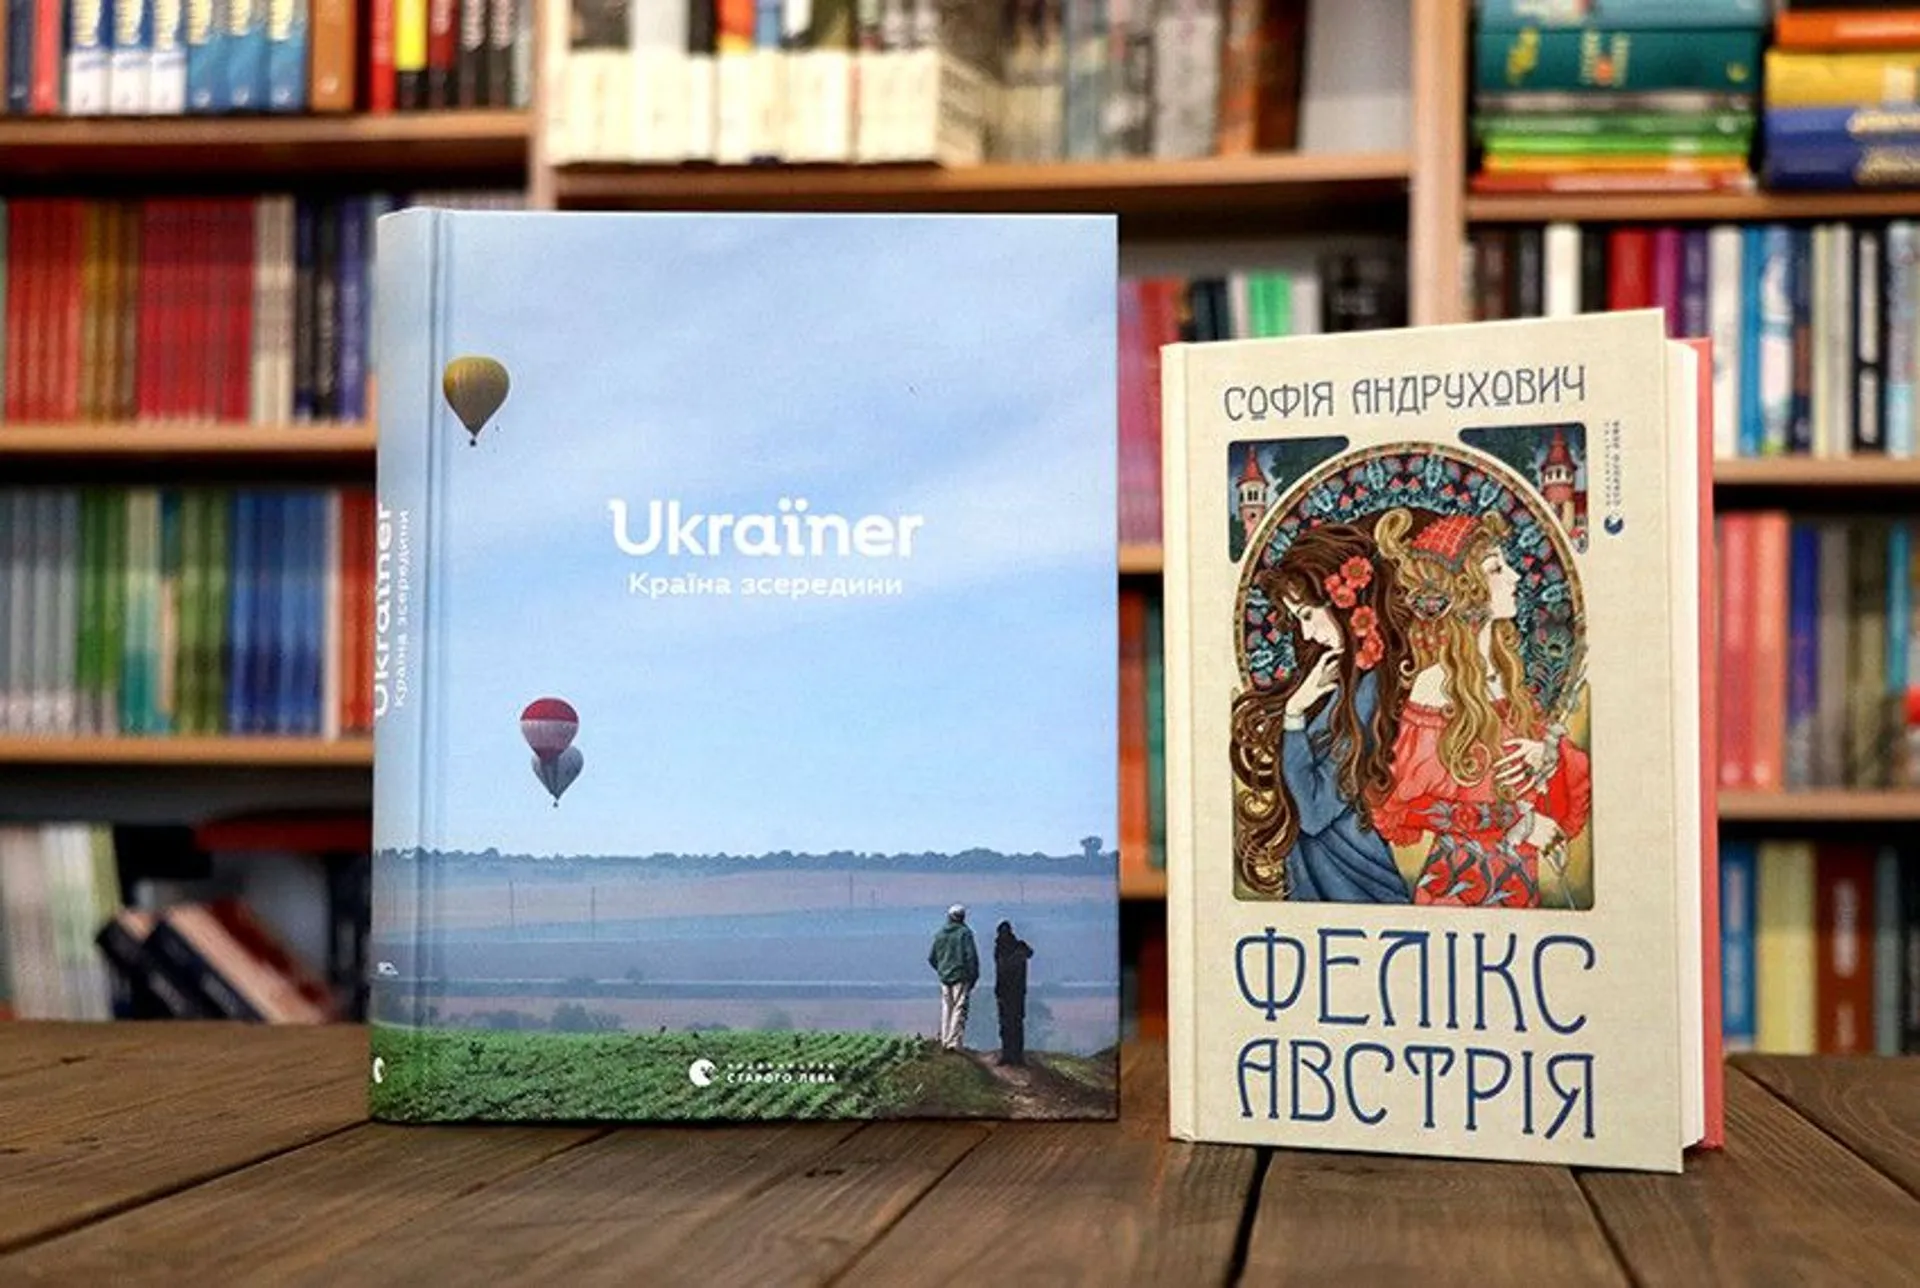 «Ukraїner» та «Фелікс Австрія» – серед 30 знакових книжок нашої Незалежності